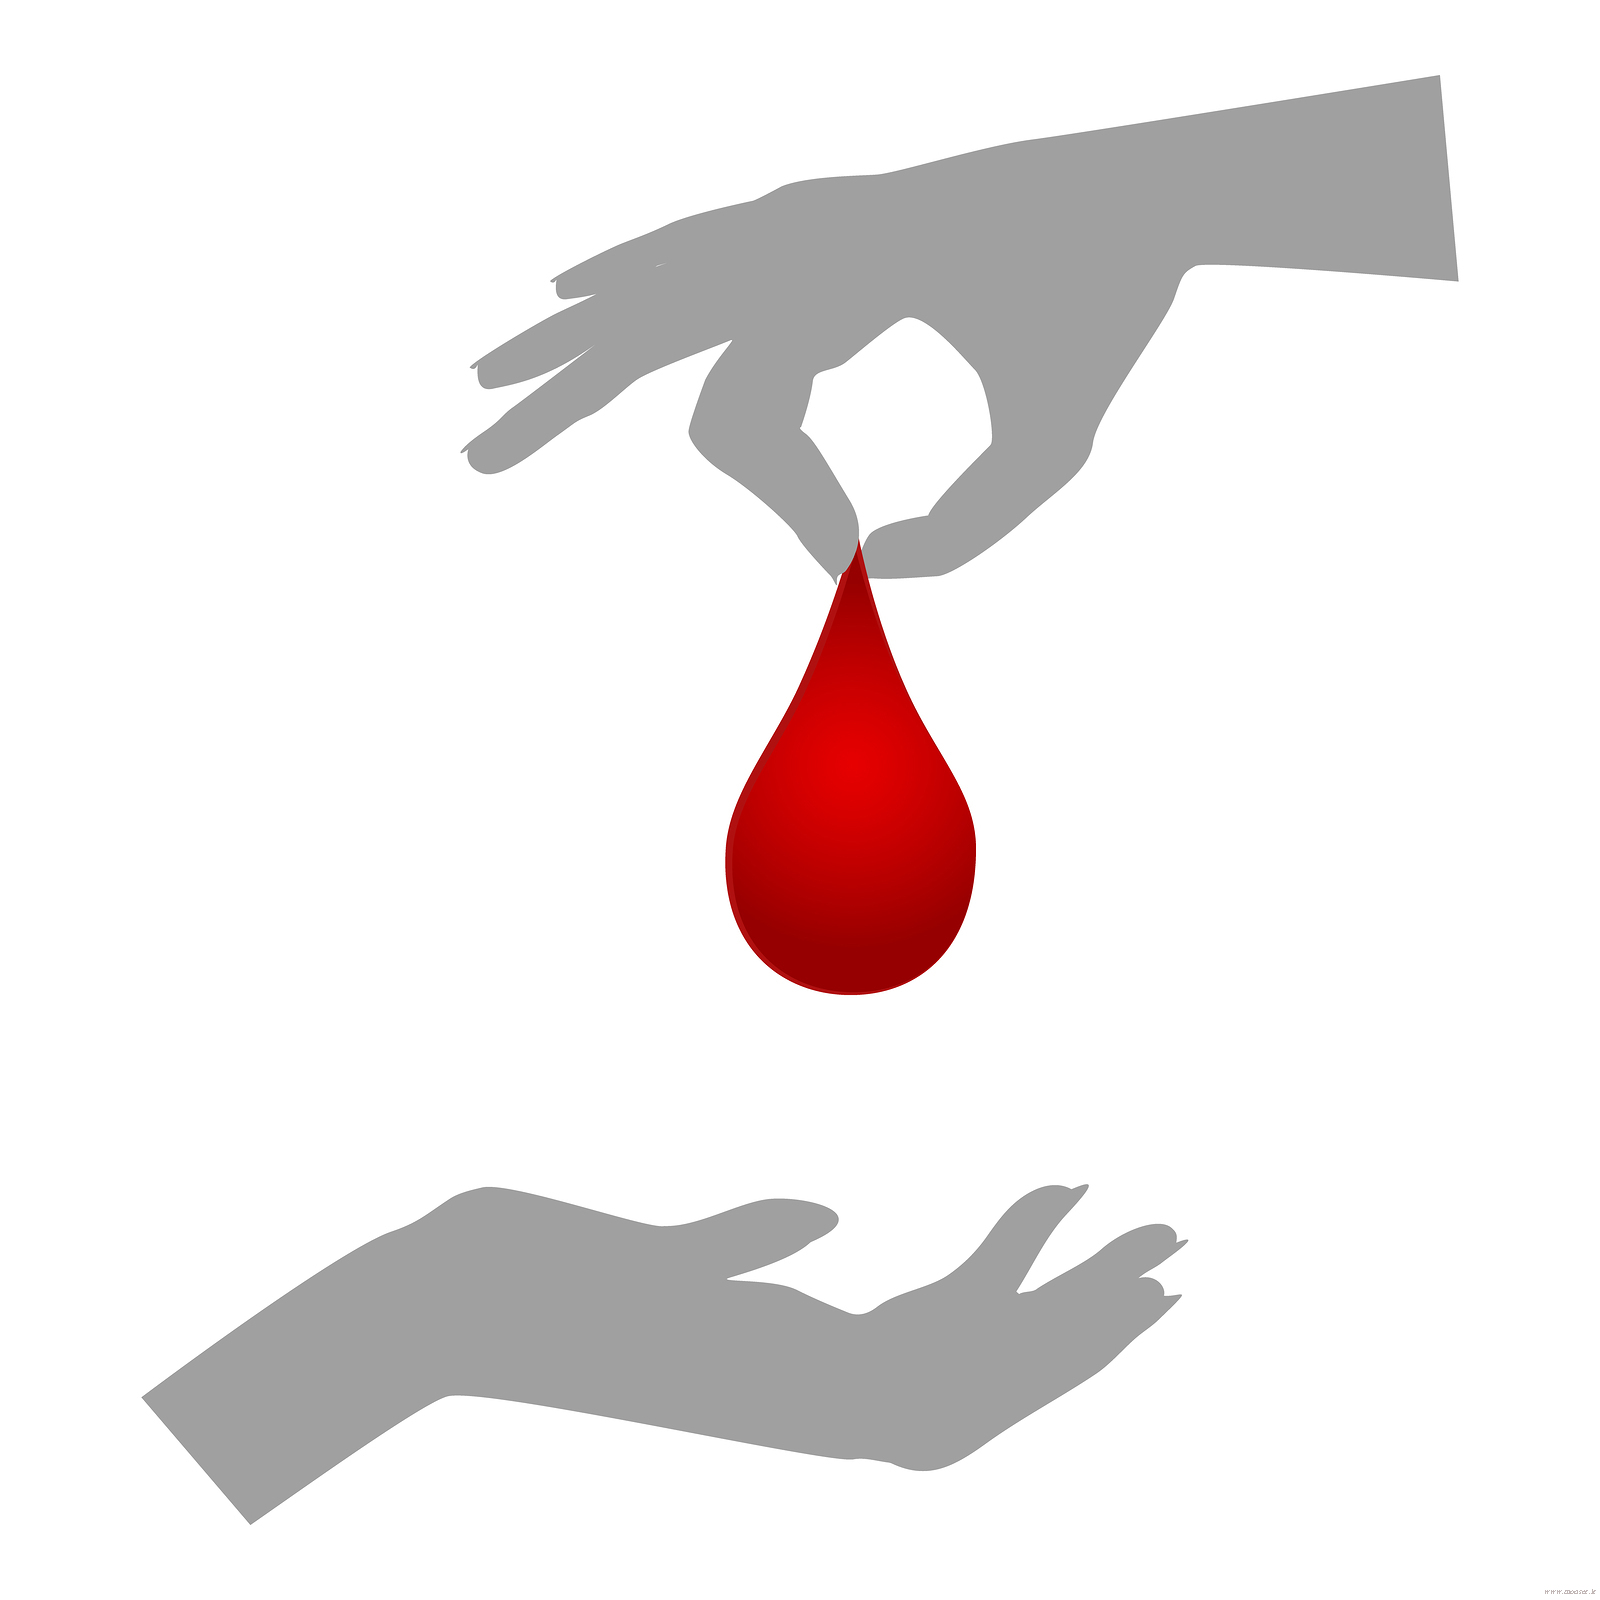 پاییز را با ثبت نام اینترنتی برای اهدا خون شروع کنید